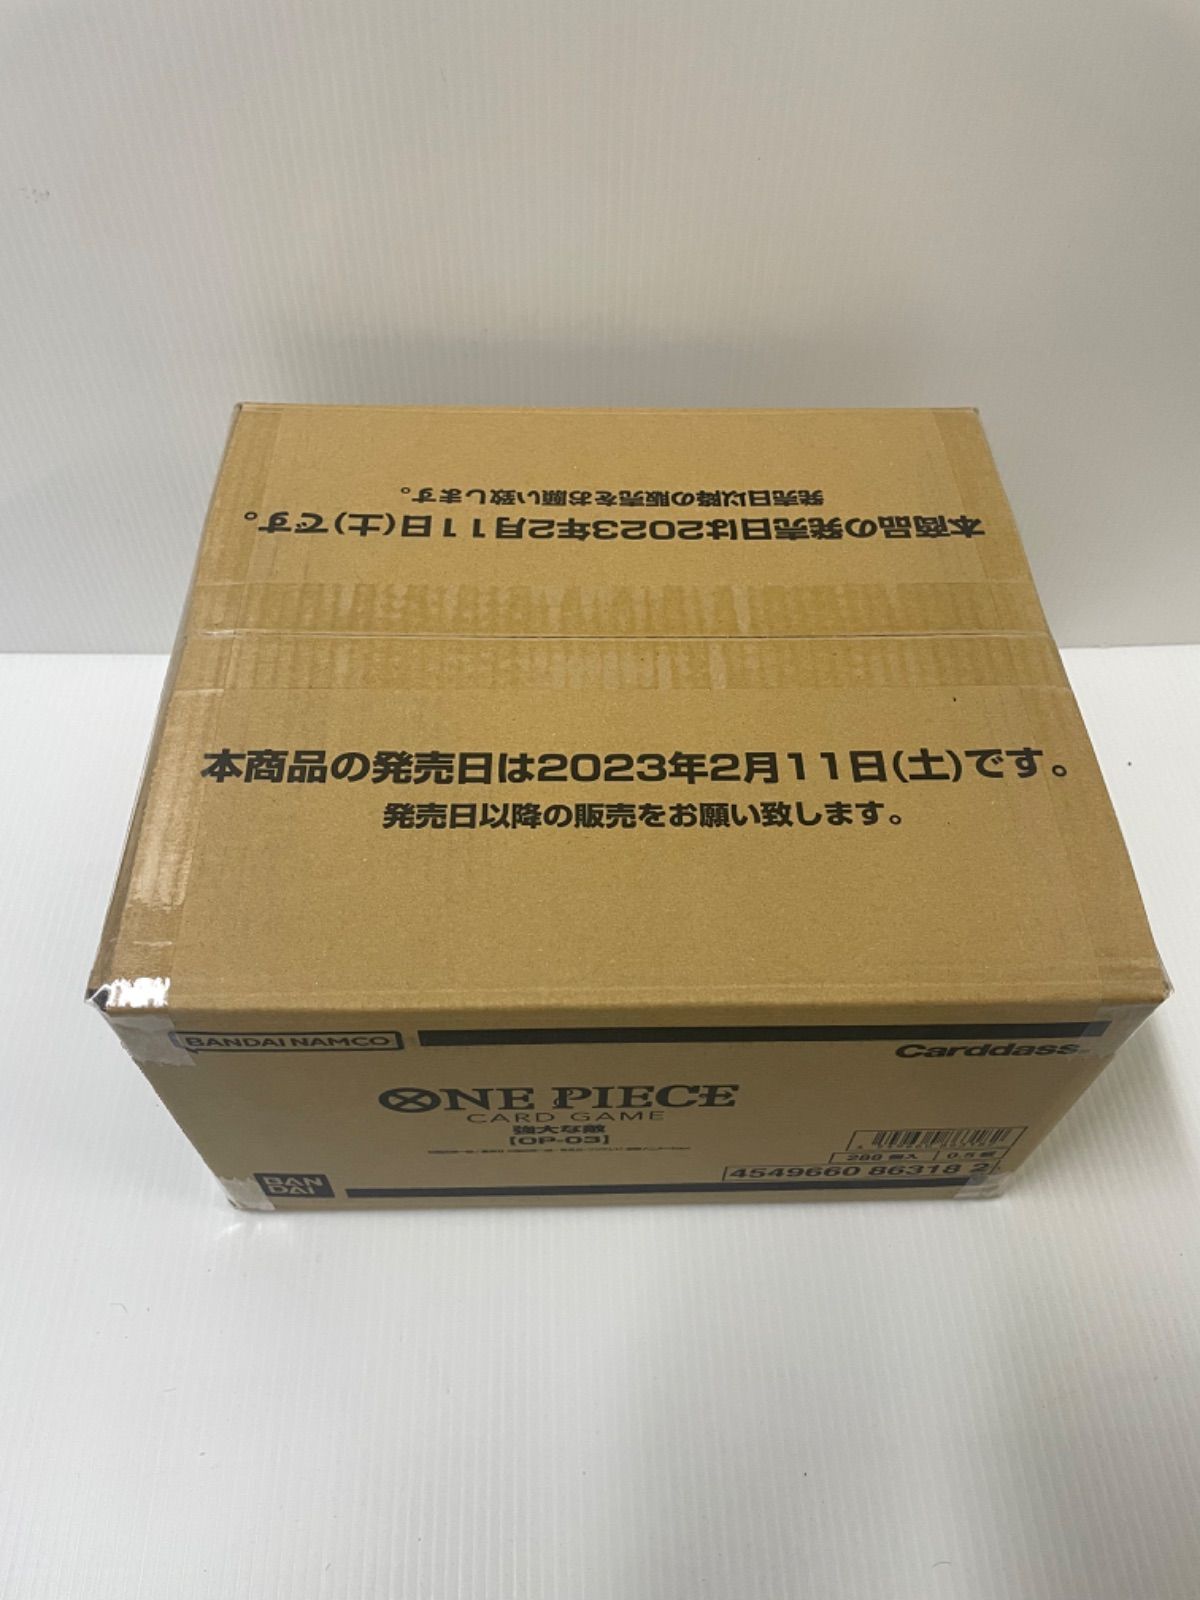 ワンピース ONE PIECE 強大な敵カードゲーム【OP-03】1カートン(12BOX 